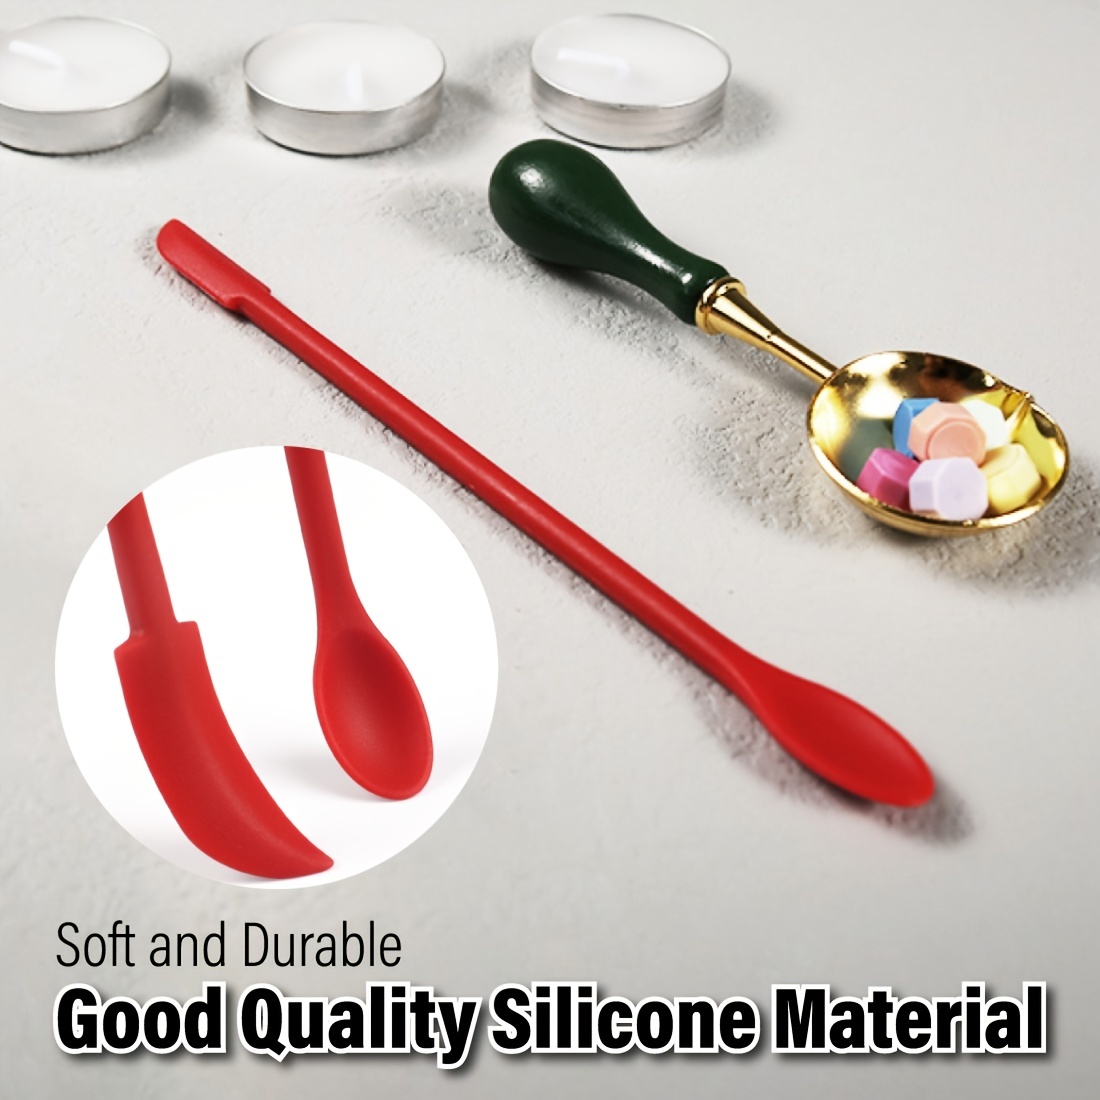 Silicone Spatula for Precise Wax Application